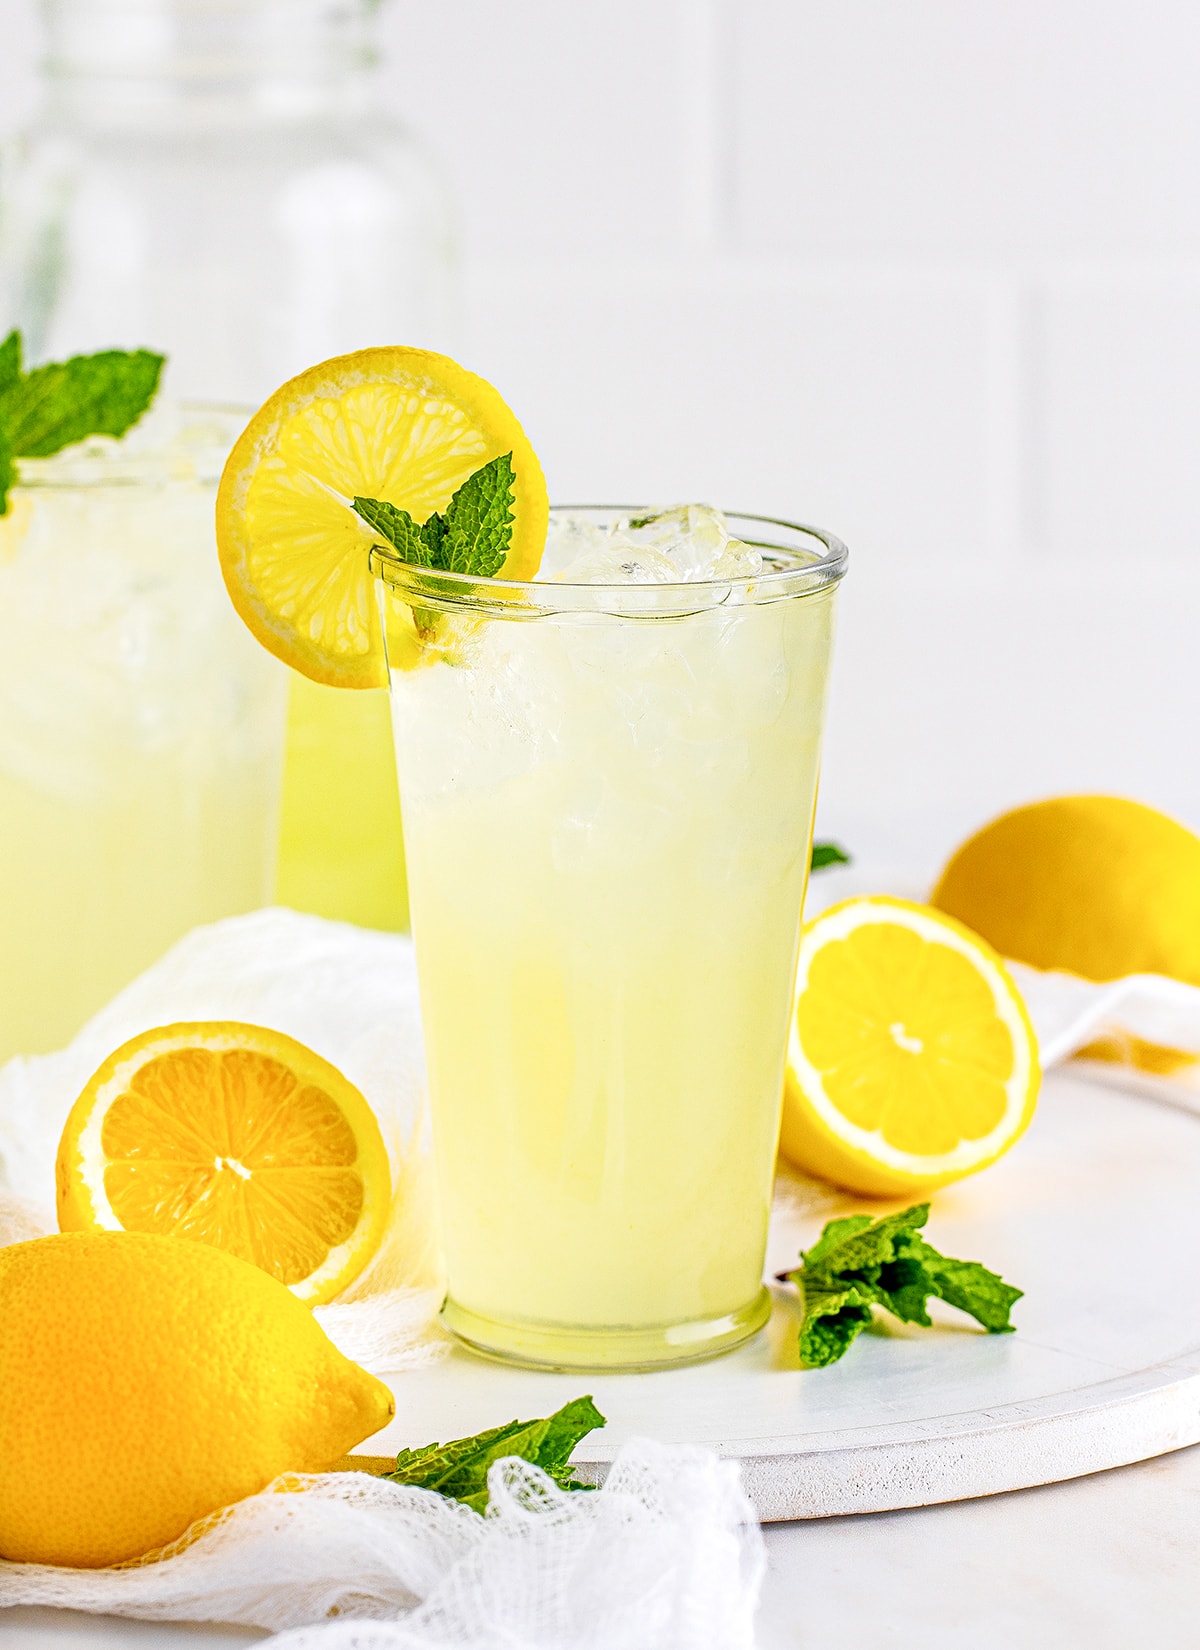 A glass of lemonade on a white platter.